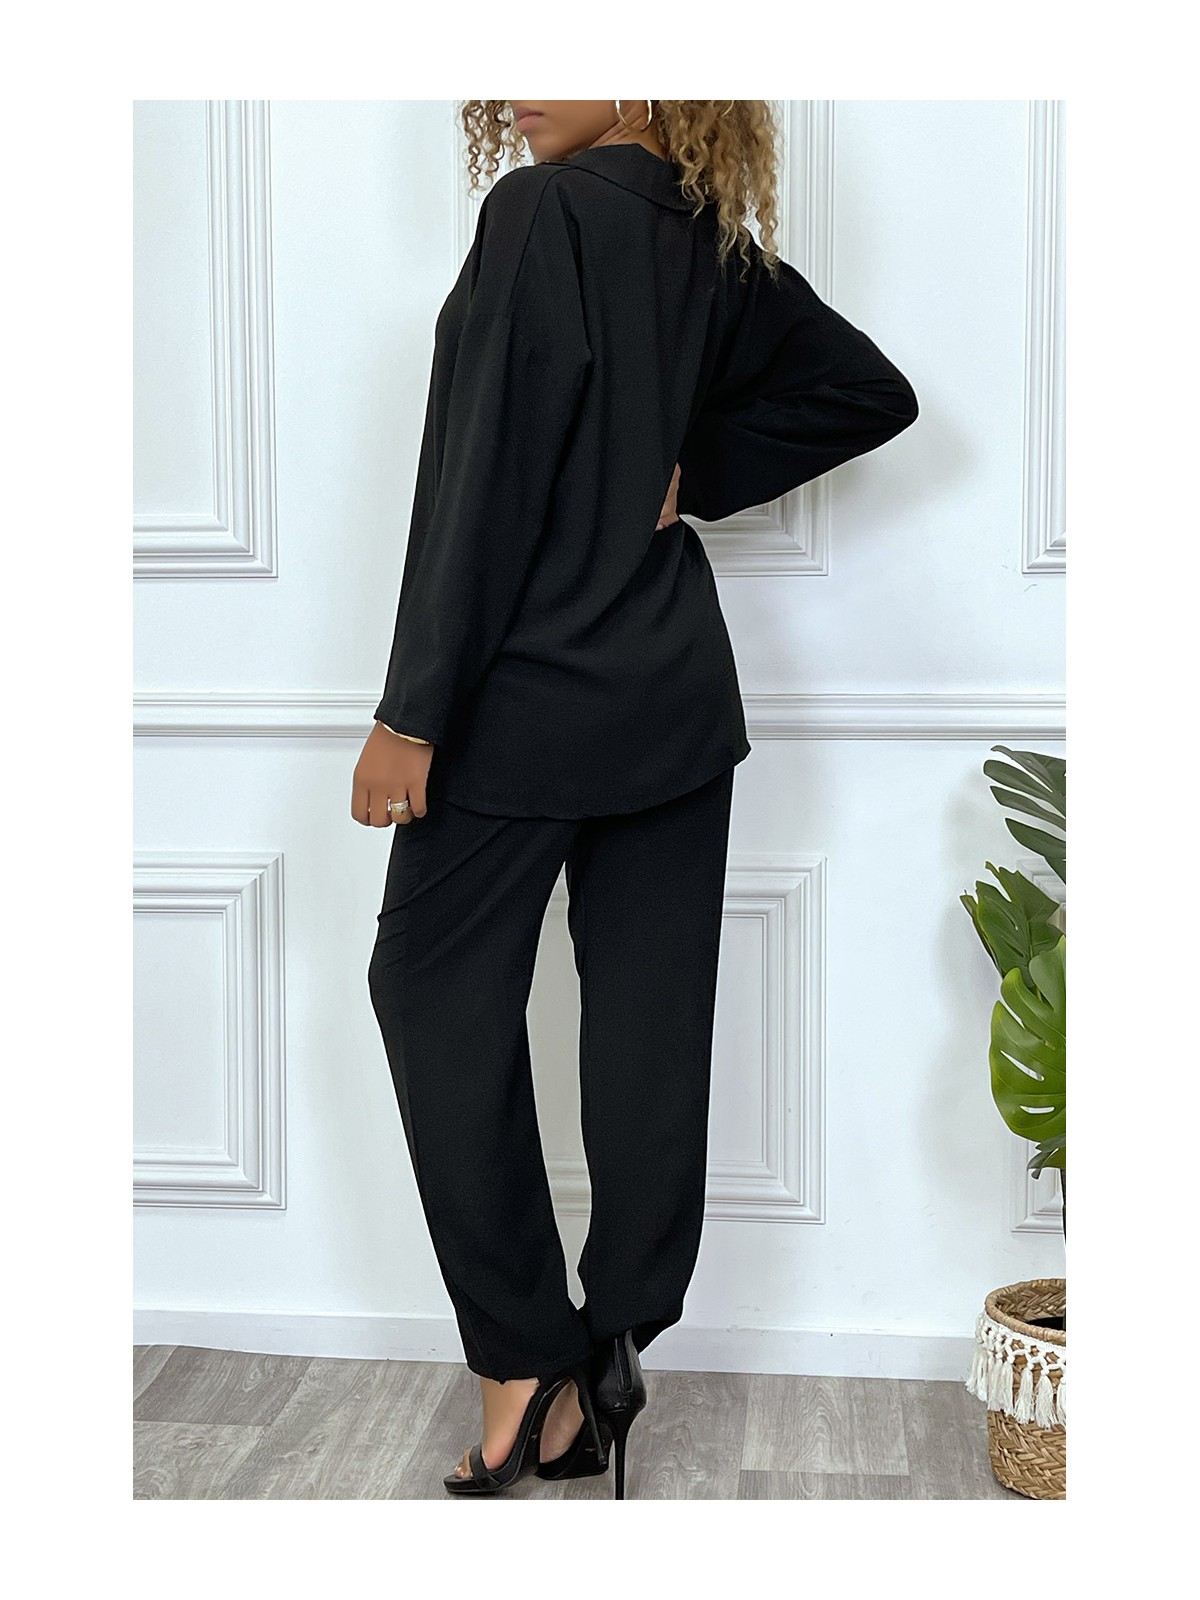 EnSZmble noir tunique et pantalon très tendance et agréable à porter - 6